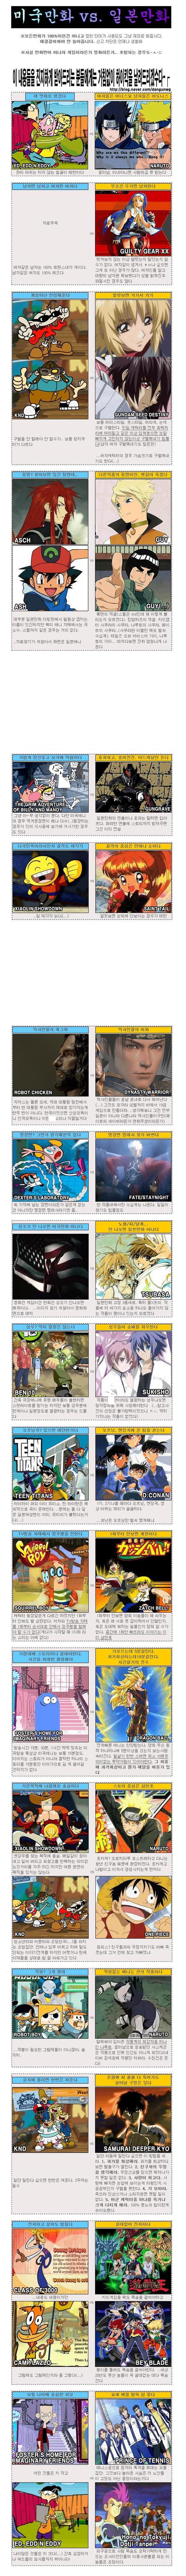 미국 만화 vs 일본 만화.jpg